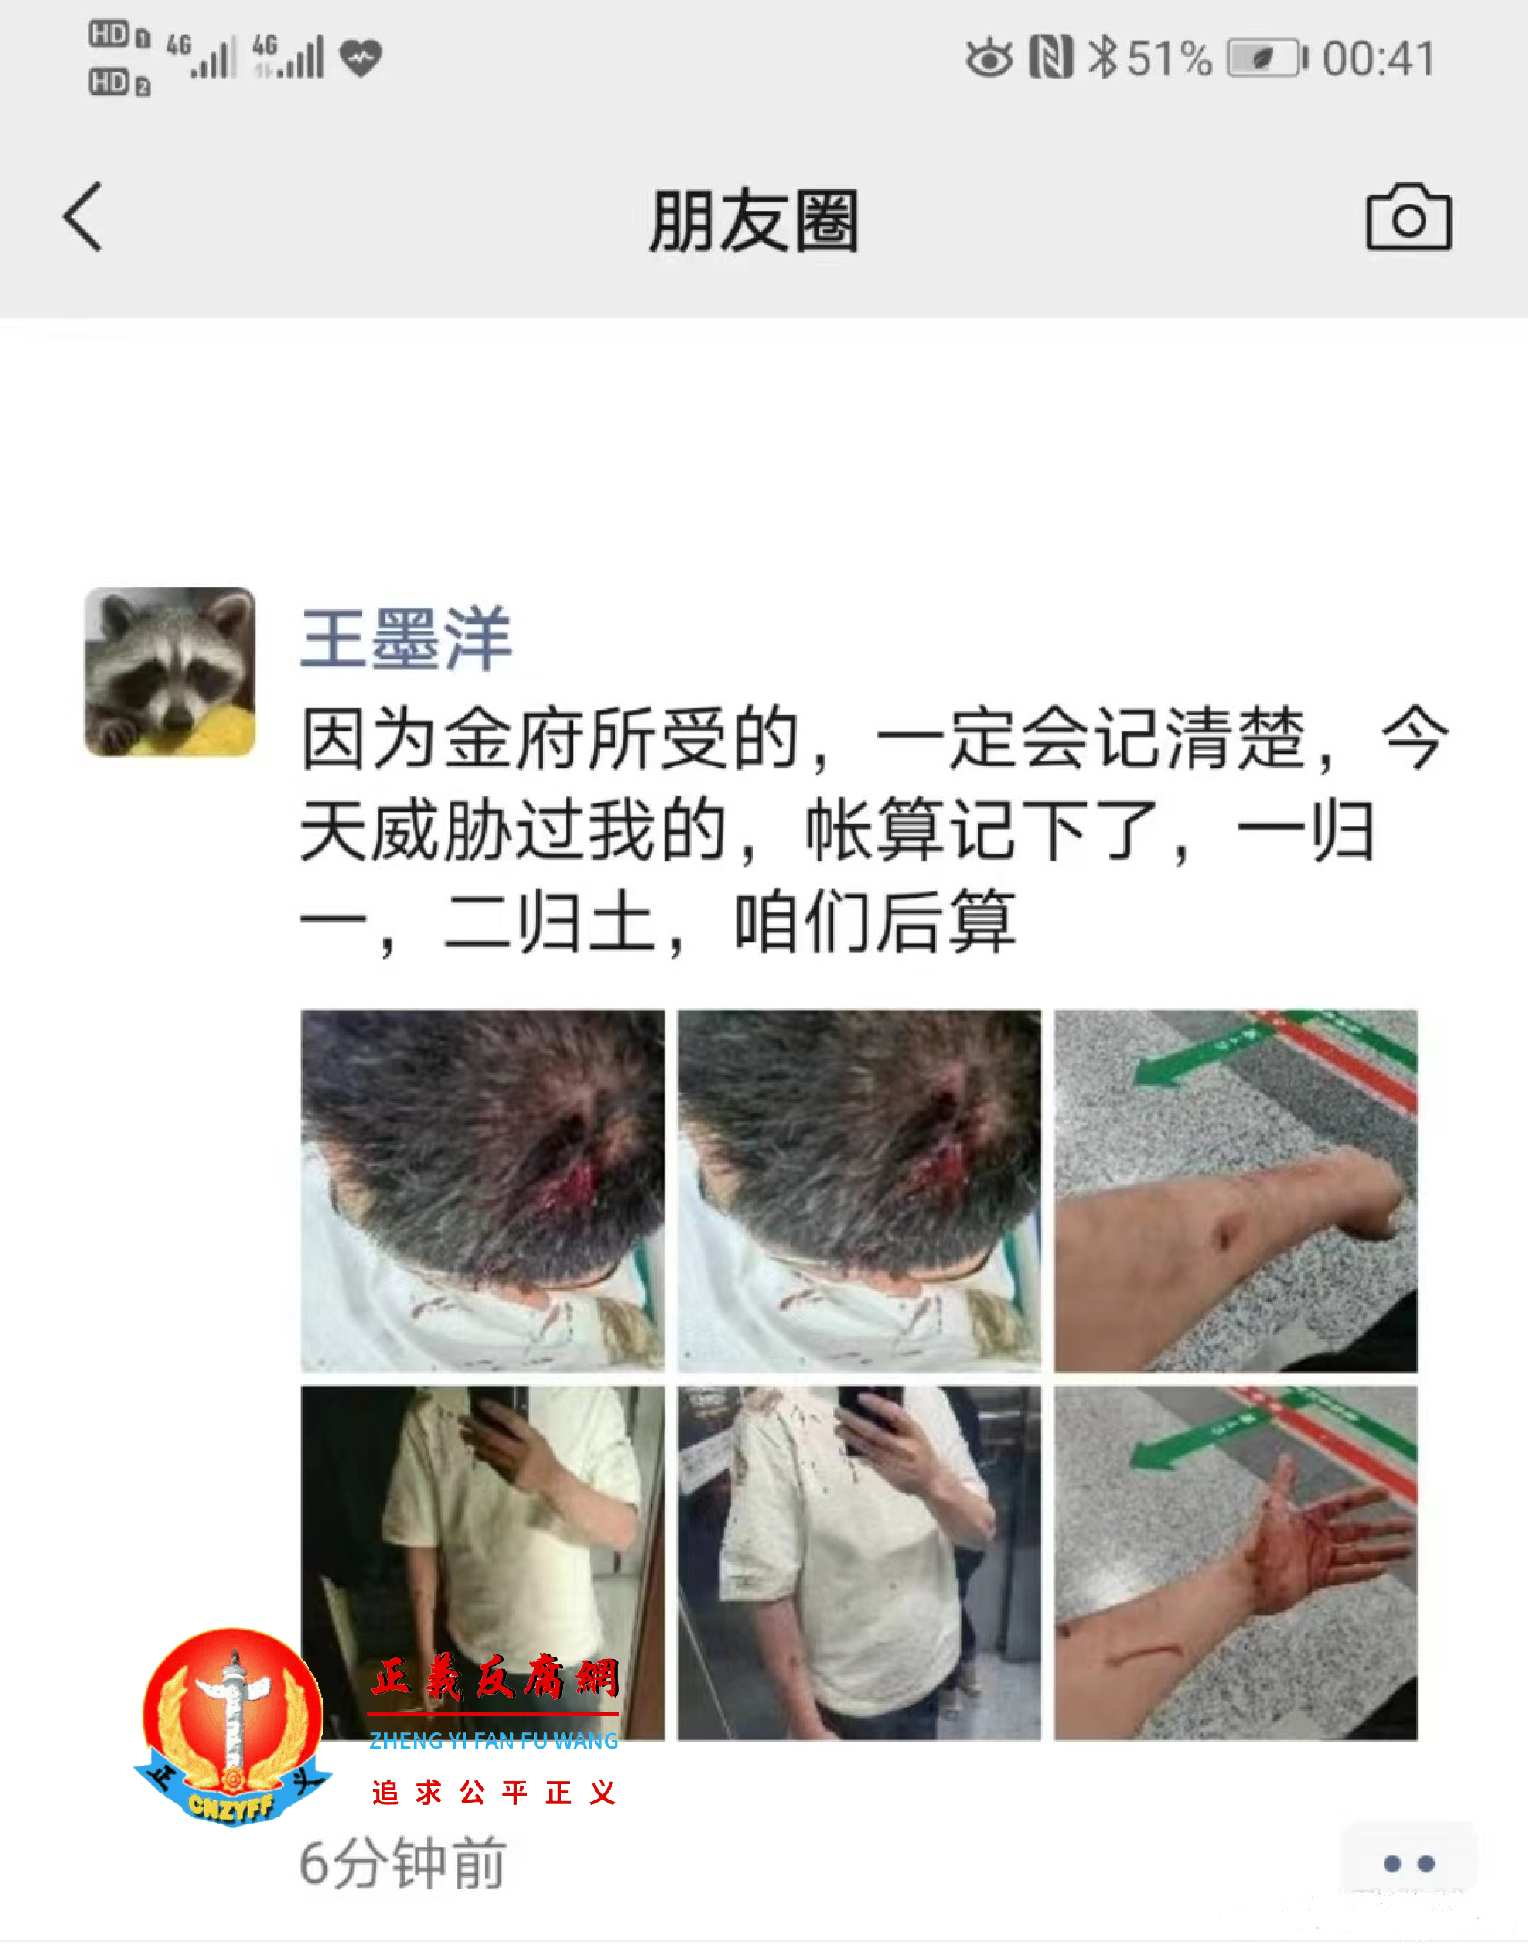 王墨洋在微信朋友圈群中上传了自己被打伤的图片和在医院缝合伤口的视频片段.png